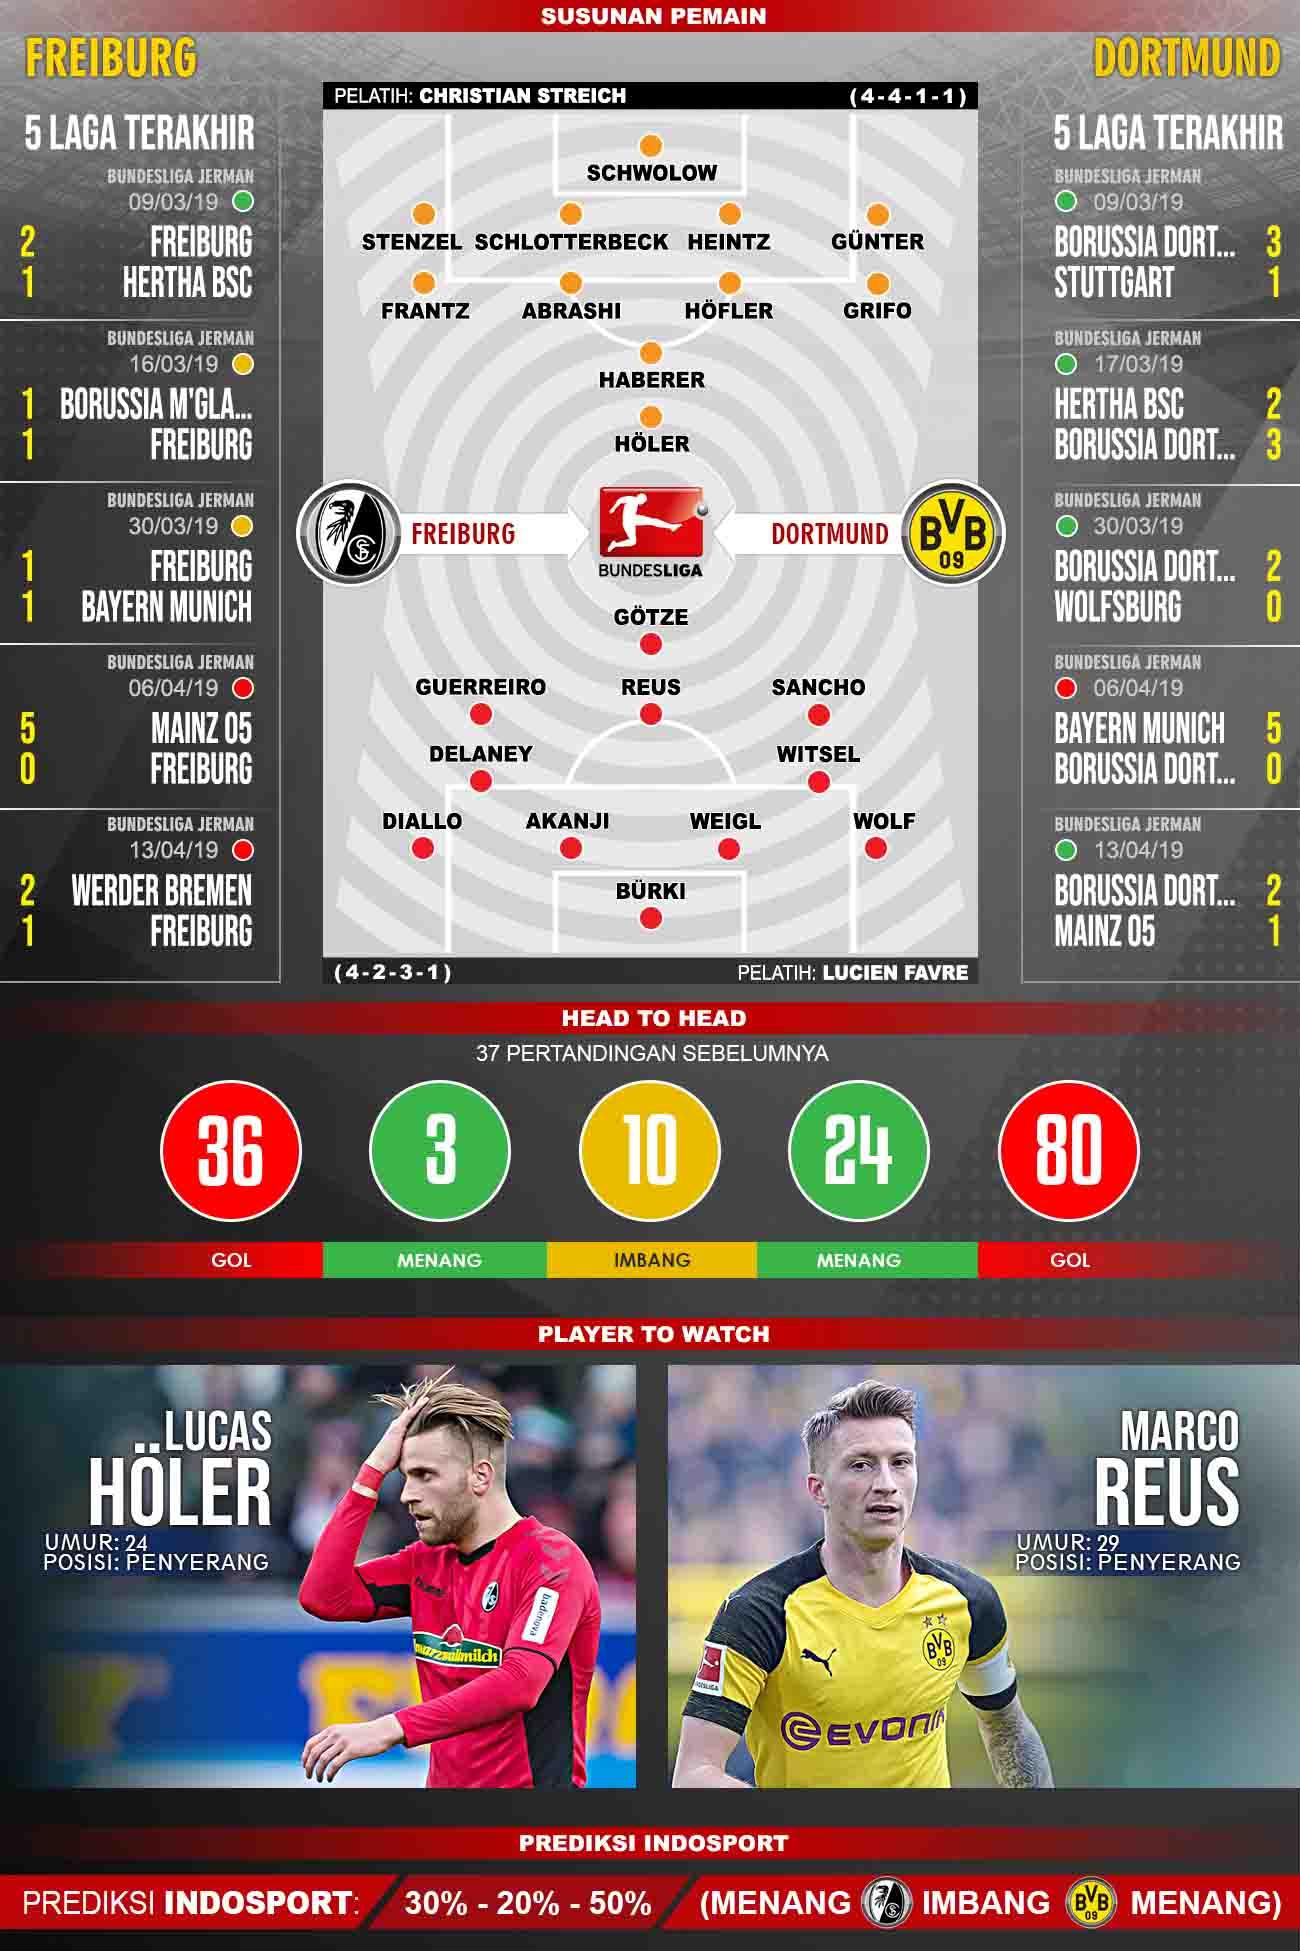 Pertandingan Freiburg vs Borussia Dortmund. Grafis: Tim/Indosport.com Copyright: Grafis: Tim/Indosport.com